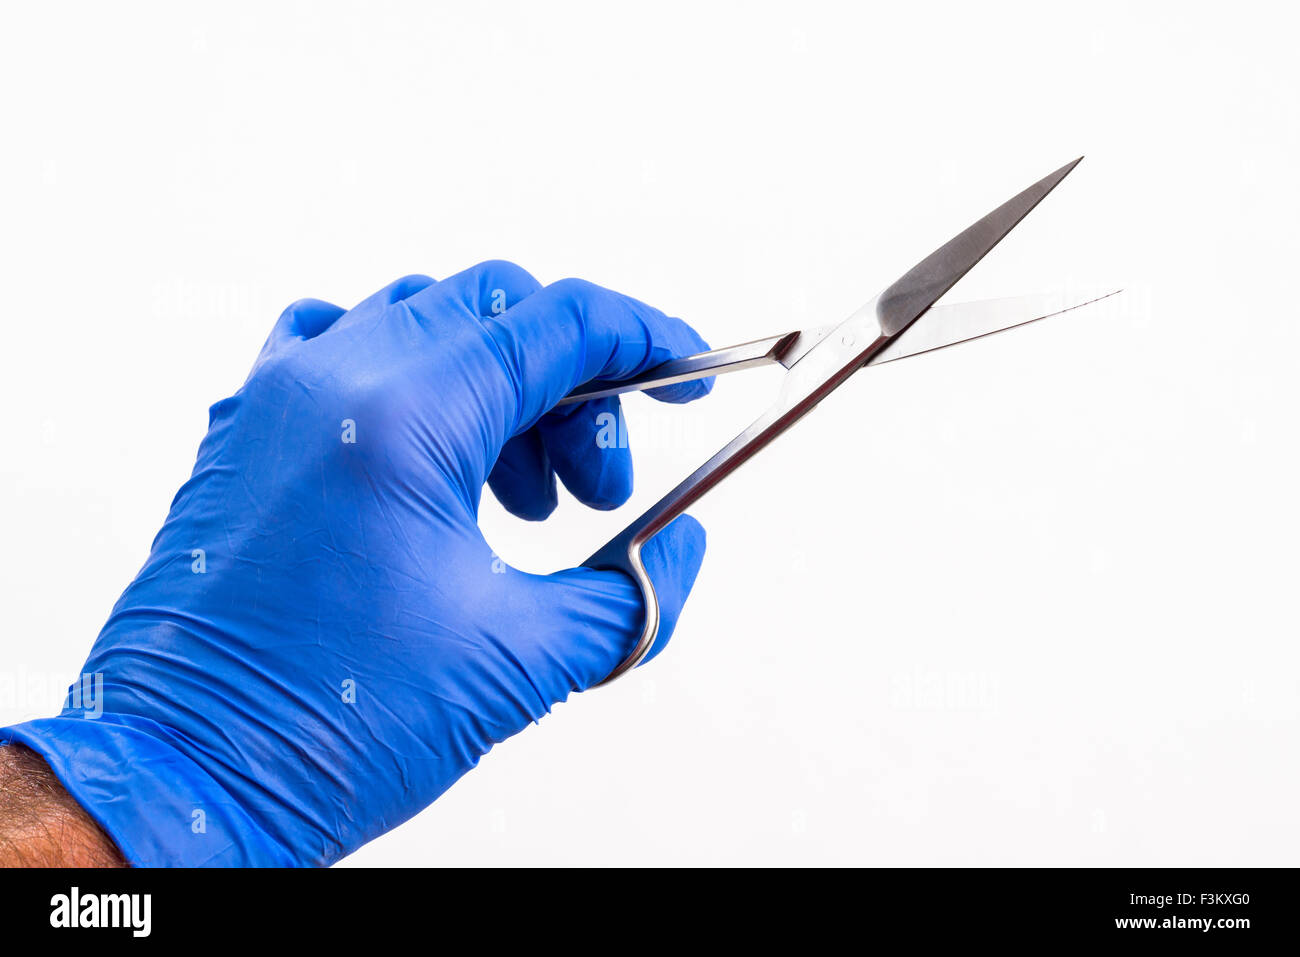 Eine Hand in einem blauen medizinische Handschuh hält eine Schere für medizinische Zwecke, die auf einem weißen Tabelle angezeigt Stockfoto